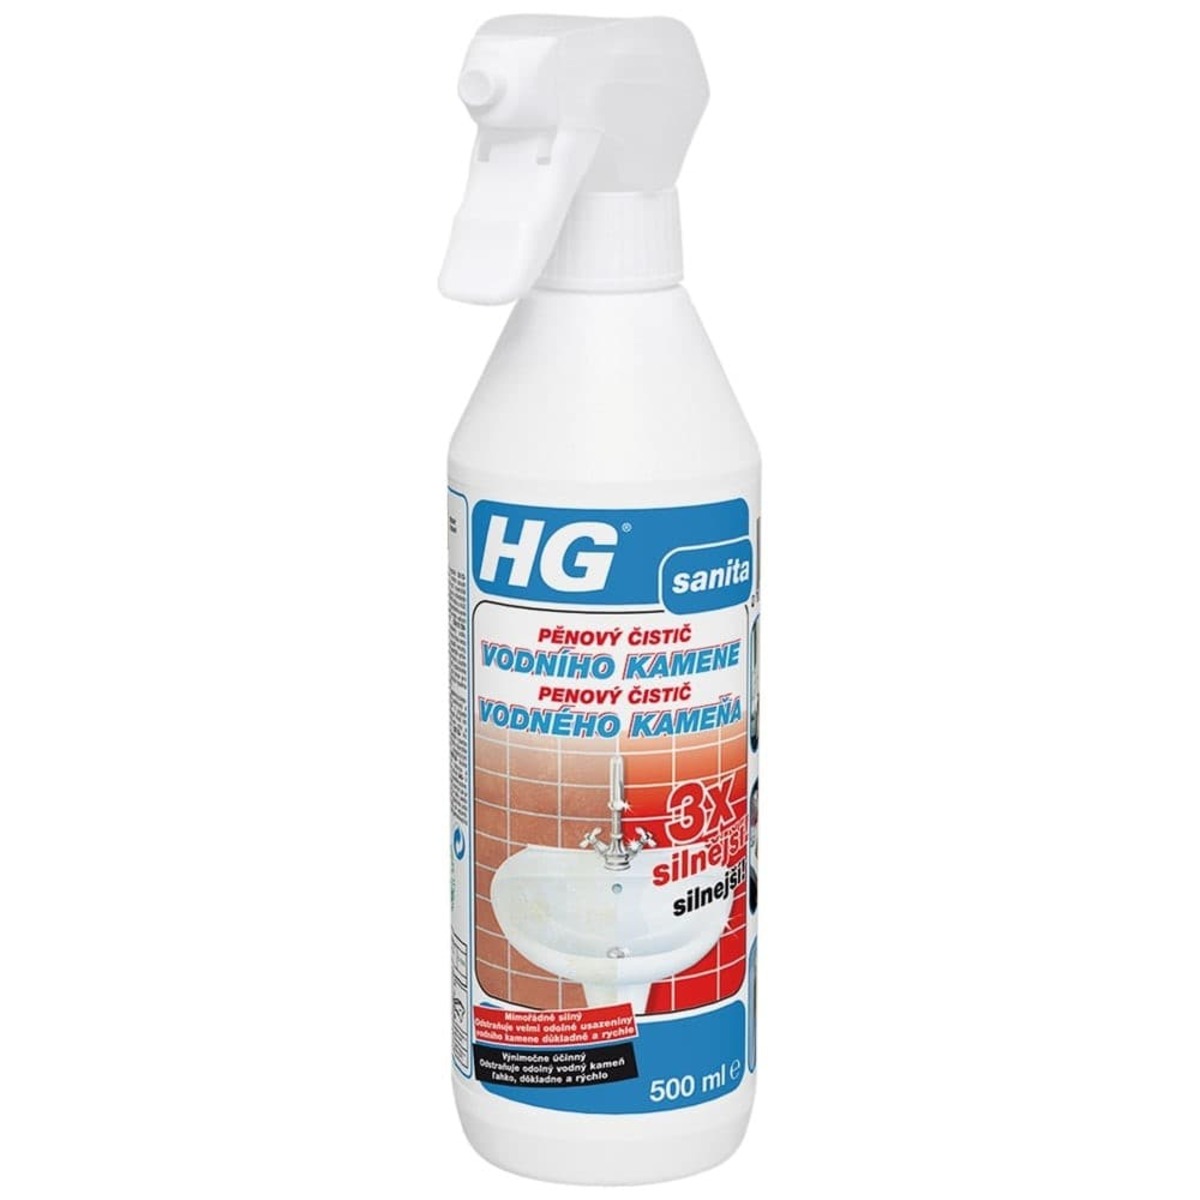 HG pěnový čistič vodního kamene 3x silnější HGPCVK3 HG